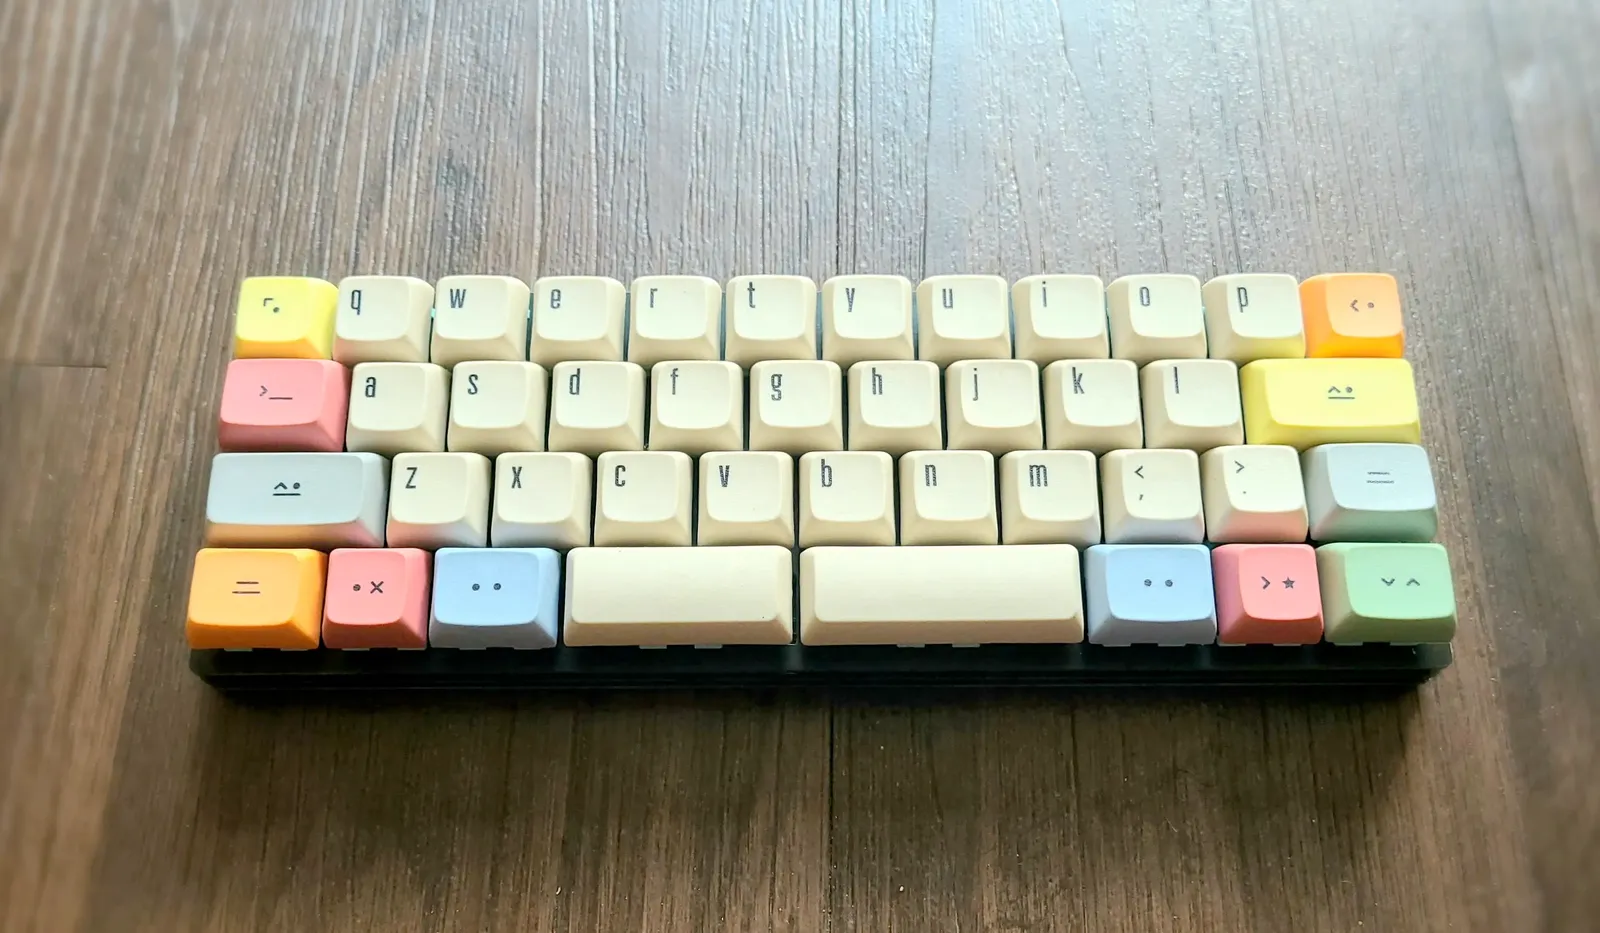 Small 40% keyboard